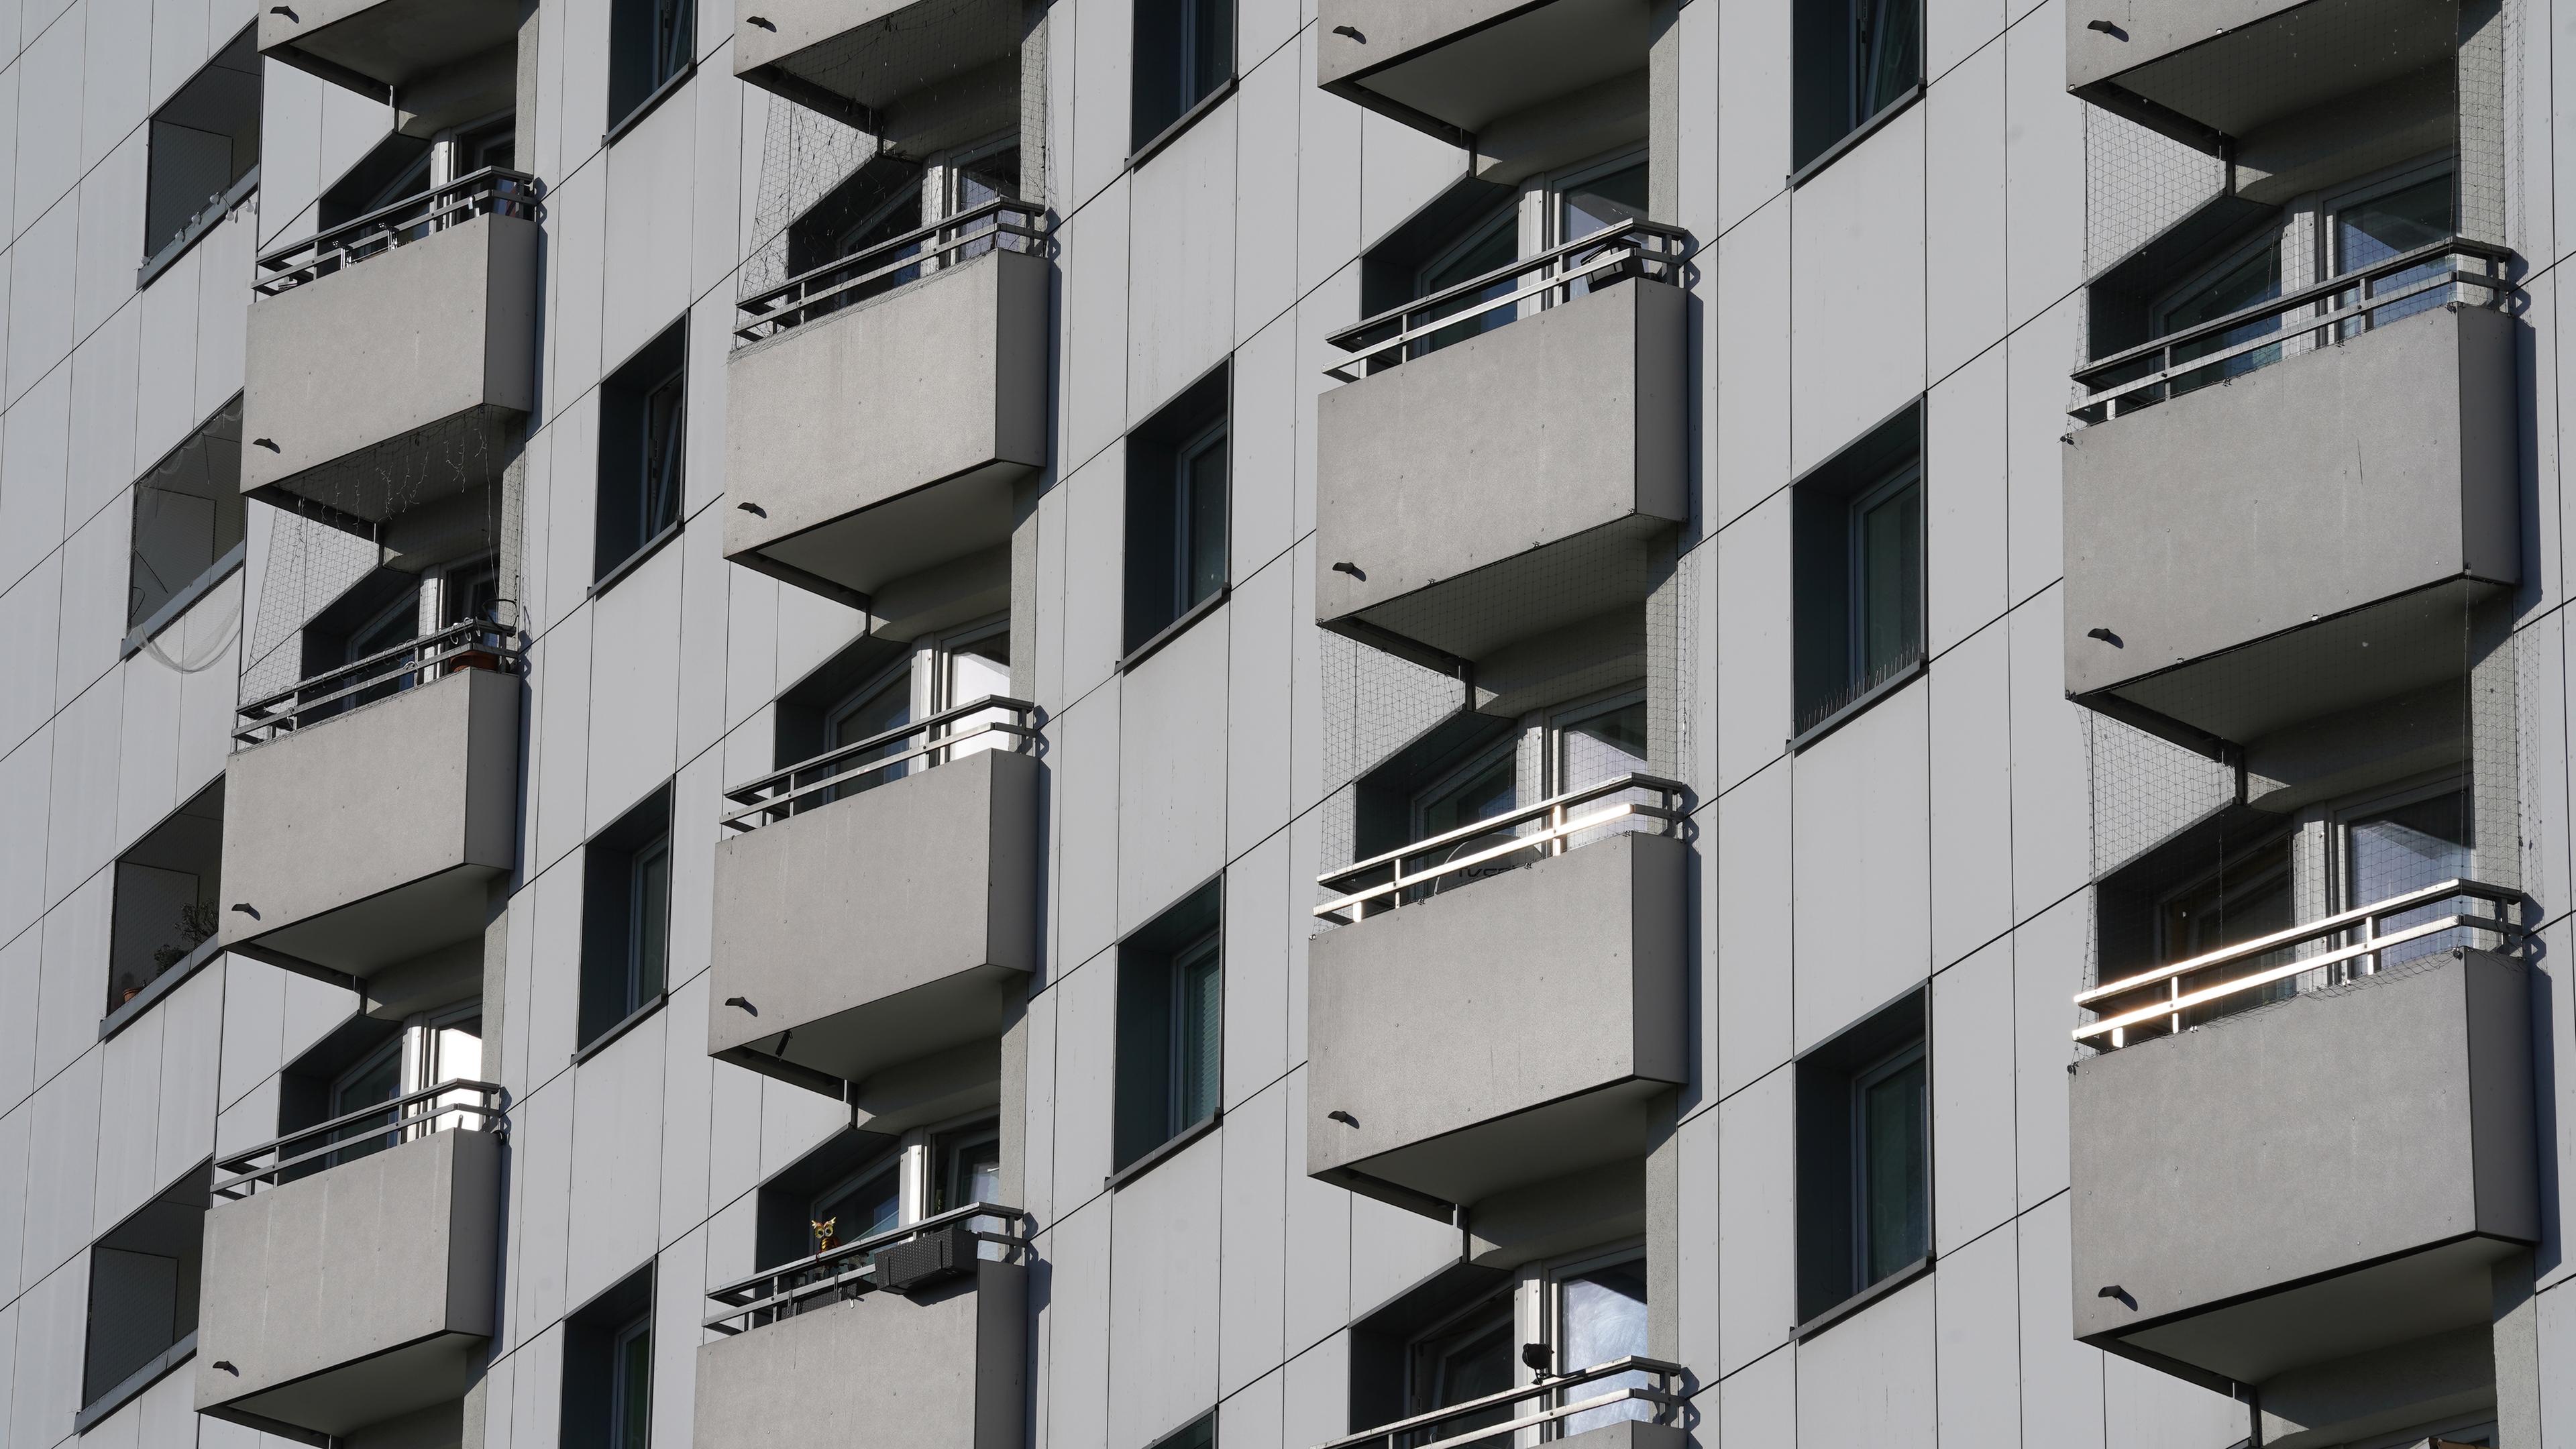 Balkone an einem grauen Mehrfamilienhaus